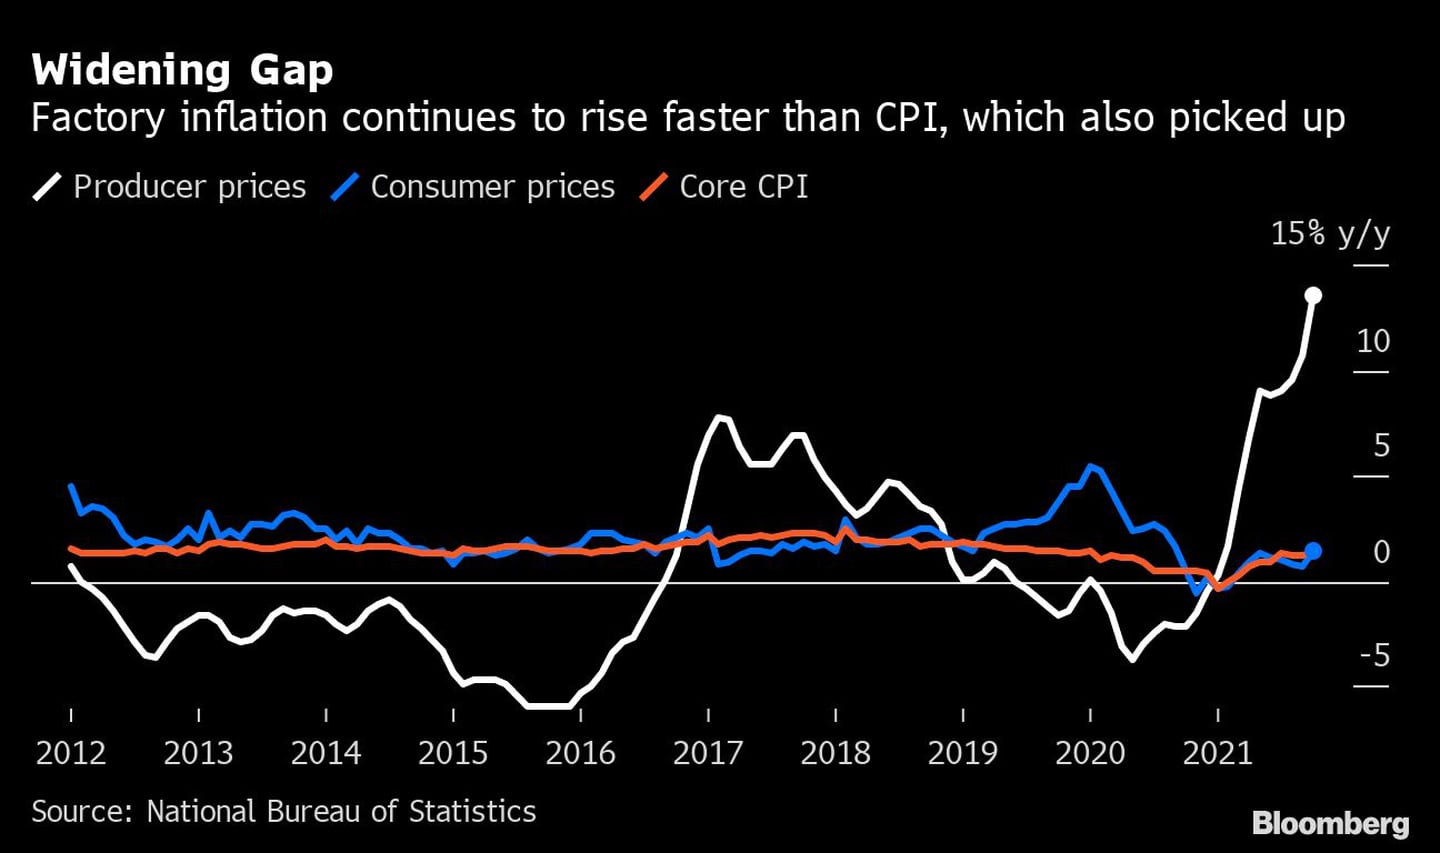 Aumento de la brecha
La inflación en las fábricas sigue subiendo más rápido que el IPC, que también repunta
Blanco: Precios de producción
Azul: precios al consumo
Rojo: IPC básico